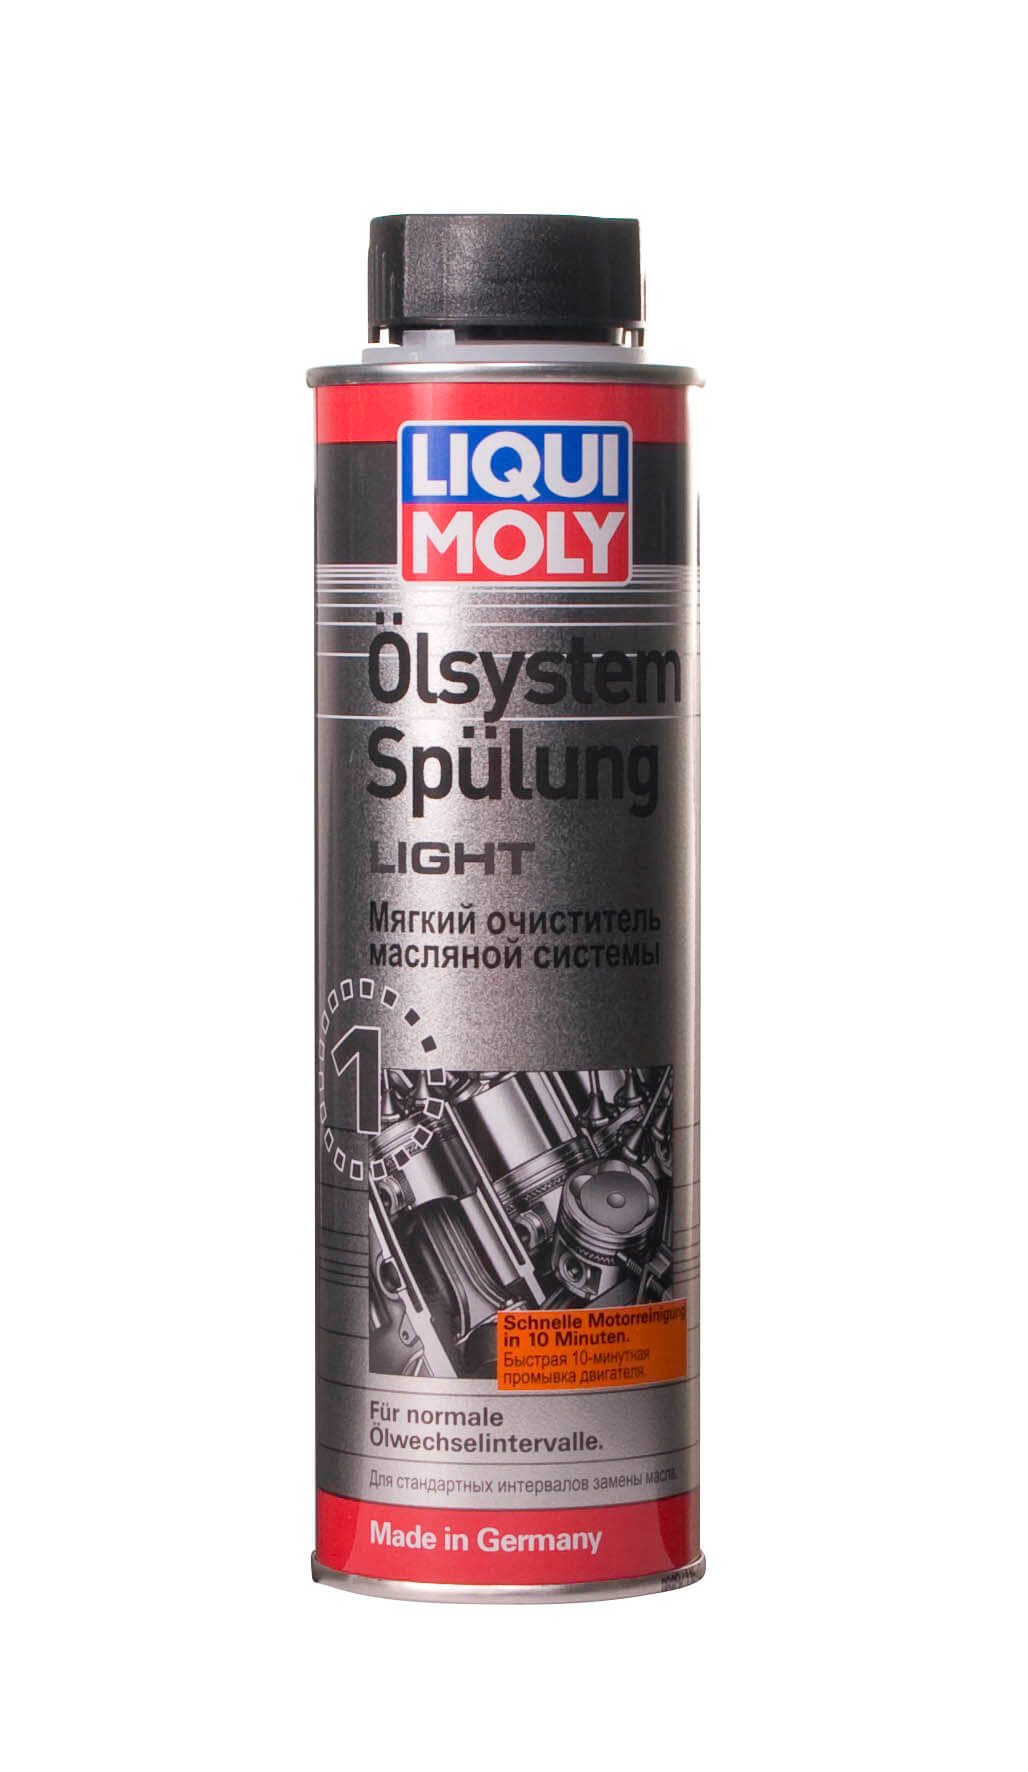 Очиститель мягкий масляной системы Oilsystem Spulung Light  0,3L